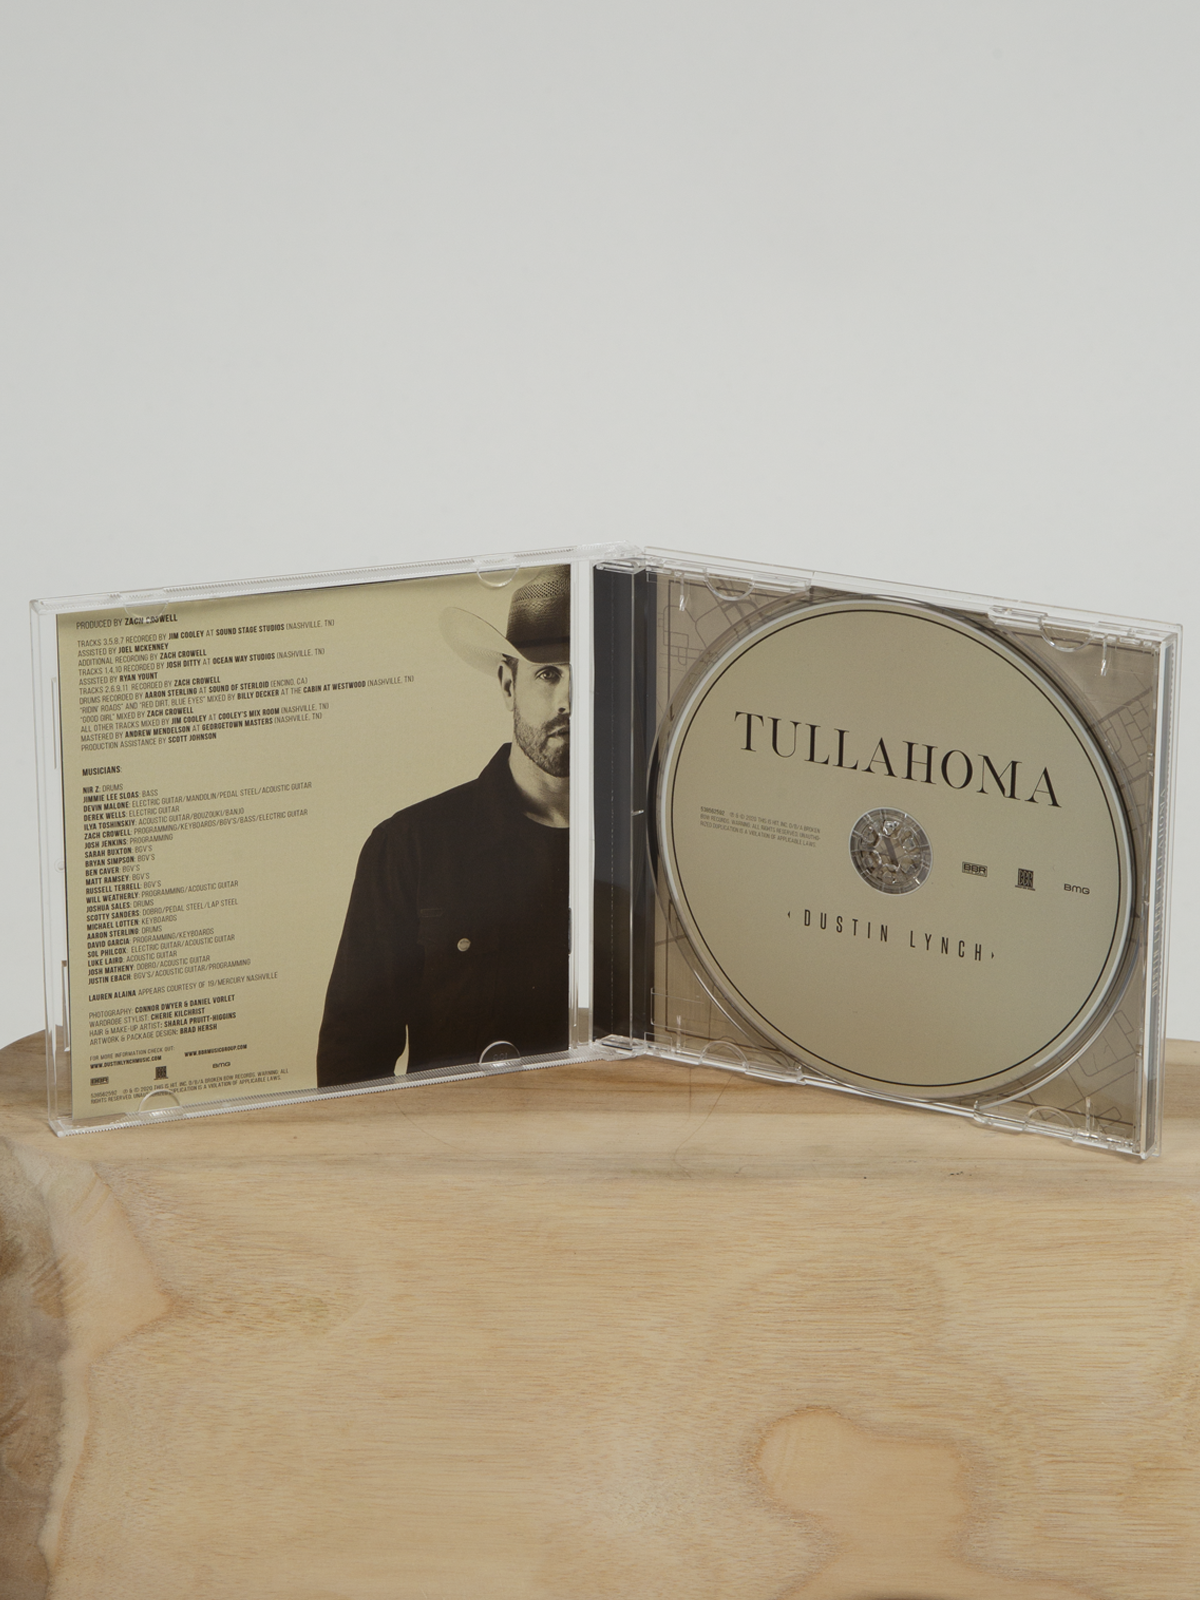 Tullahoma CD inside Dustin Lynch 